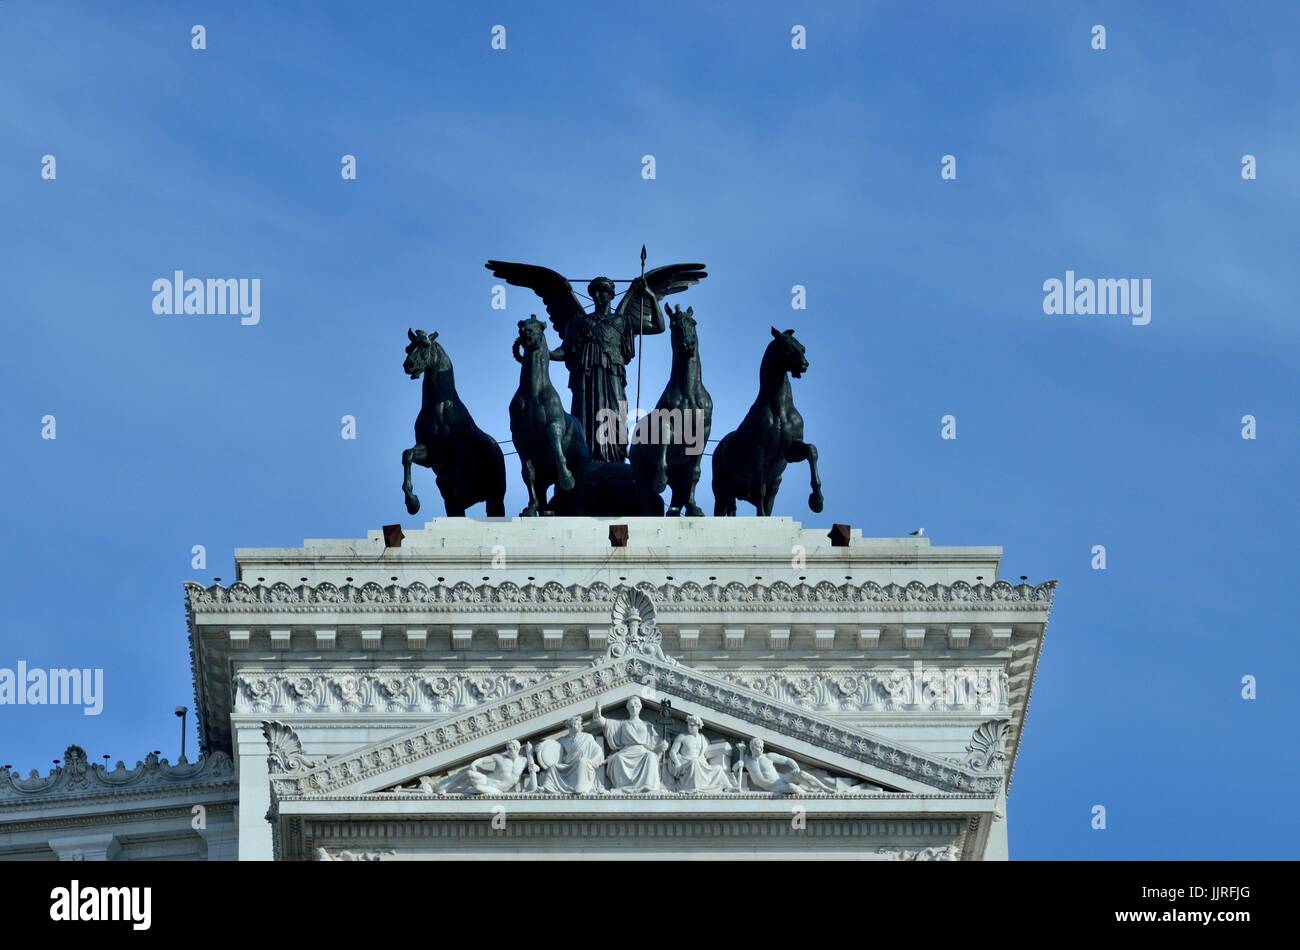 Le quadrige de l'unité et de Civivm Libertati - l'inscription au dessus de l'ouest ciselées de la colonnade Monumento Nazionale, Rome, Italie, Europe Banque D'Images